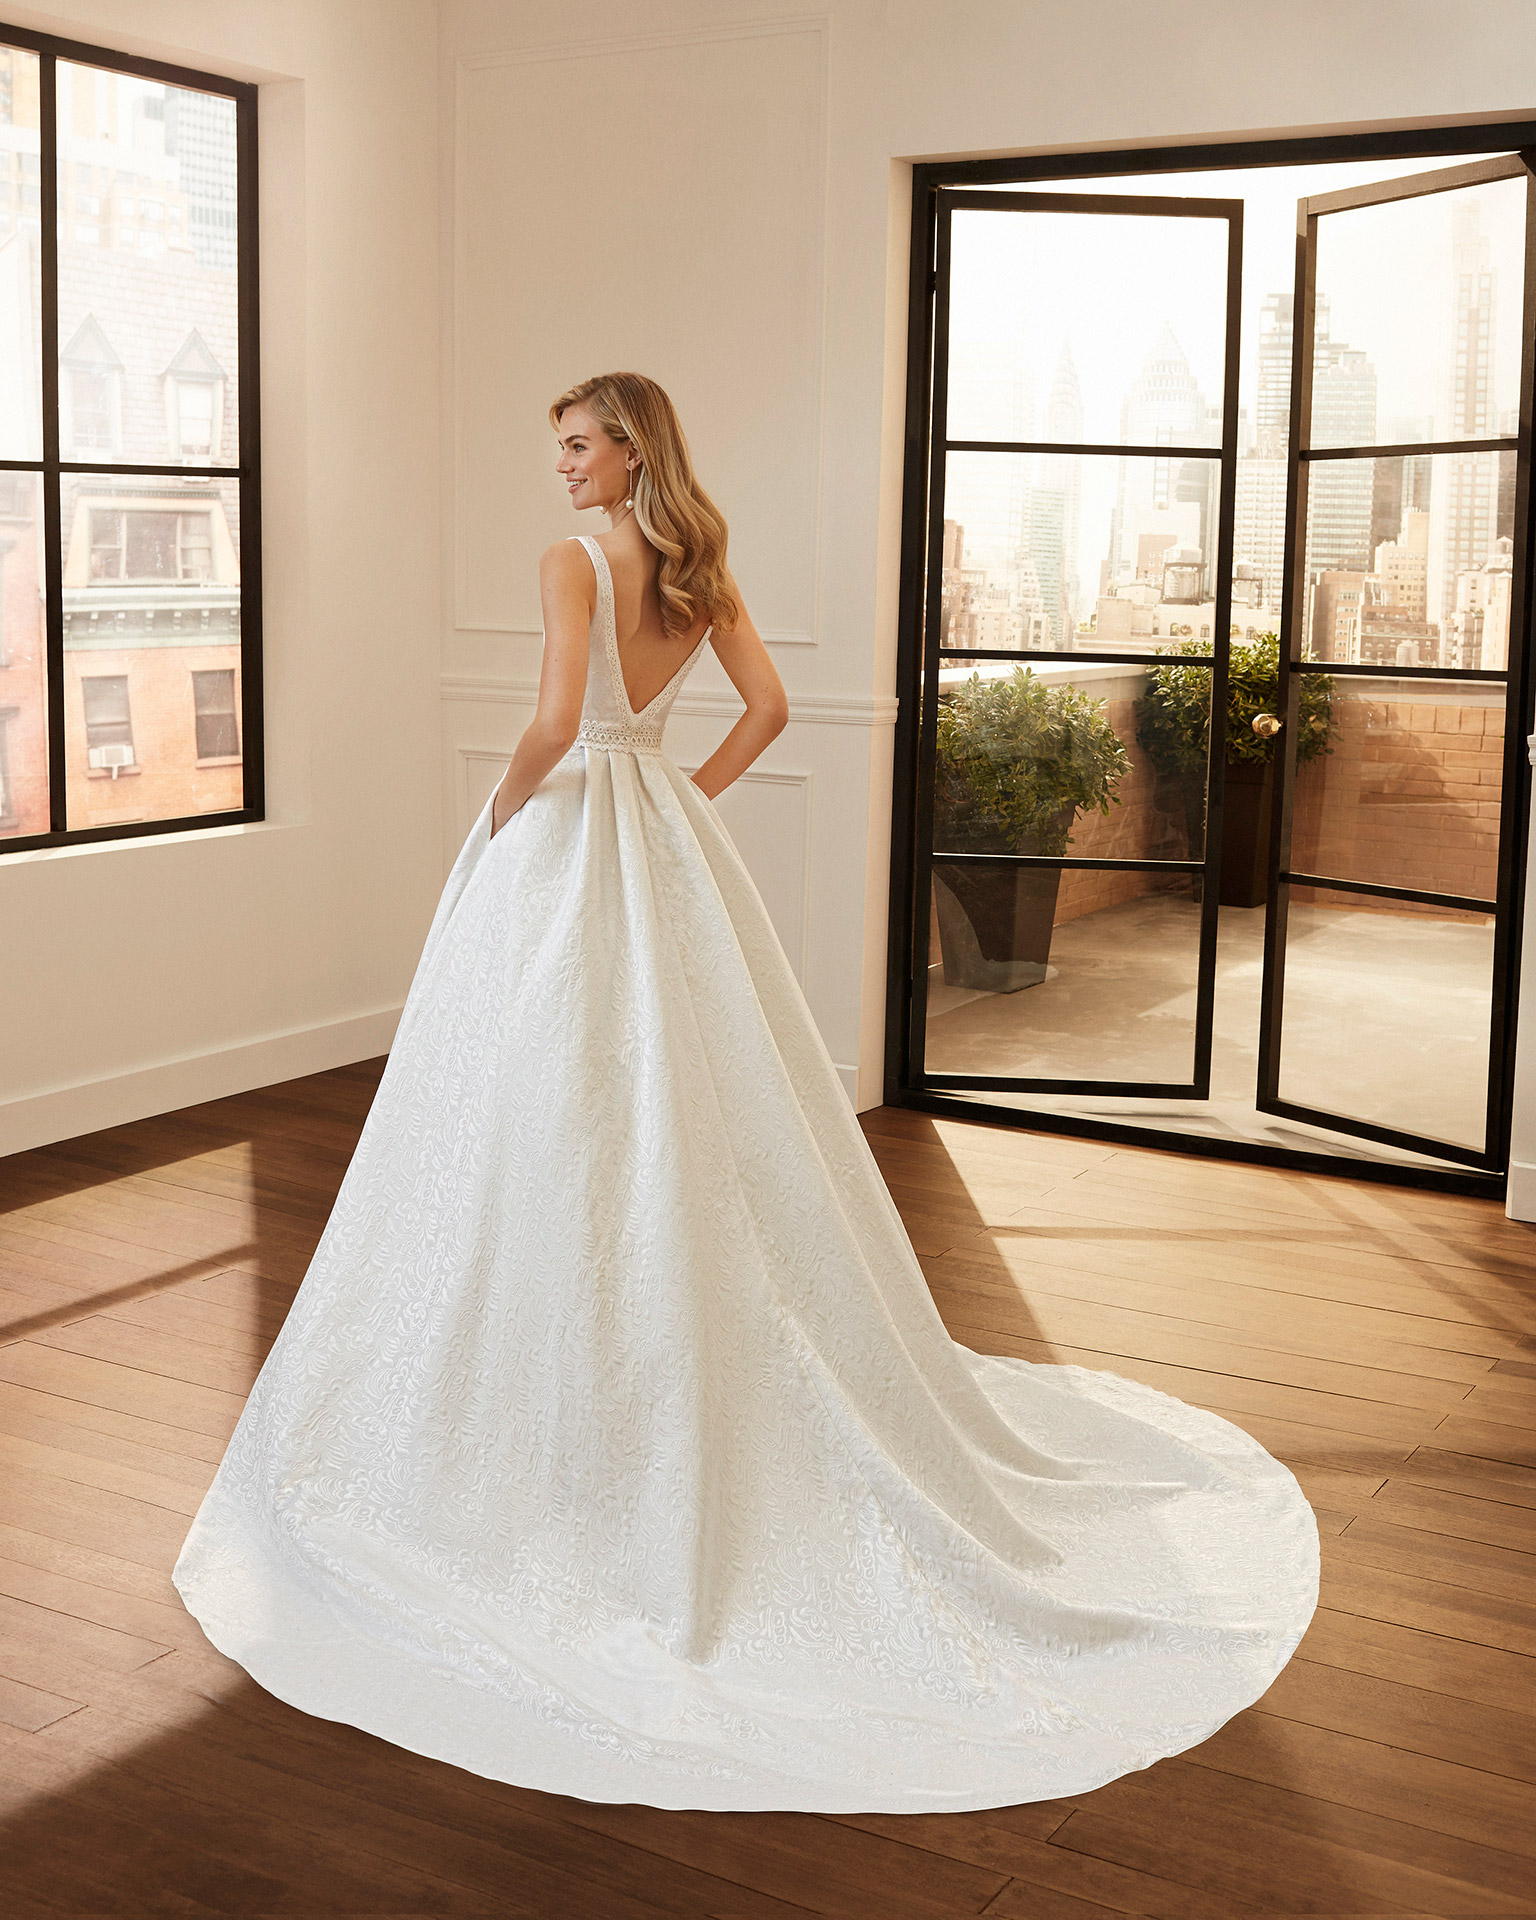 Vestido de novia estilo clásico de brocado, encaje y pedrería con escote y espalda en V. Colección  2020.